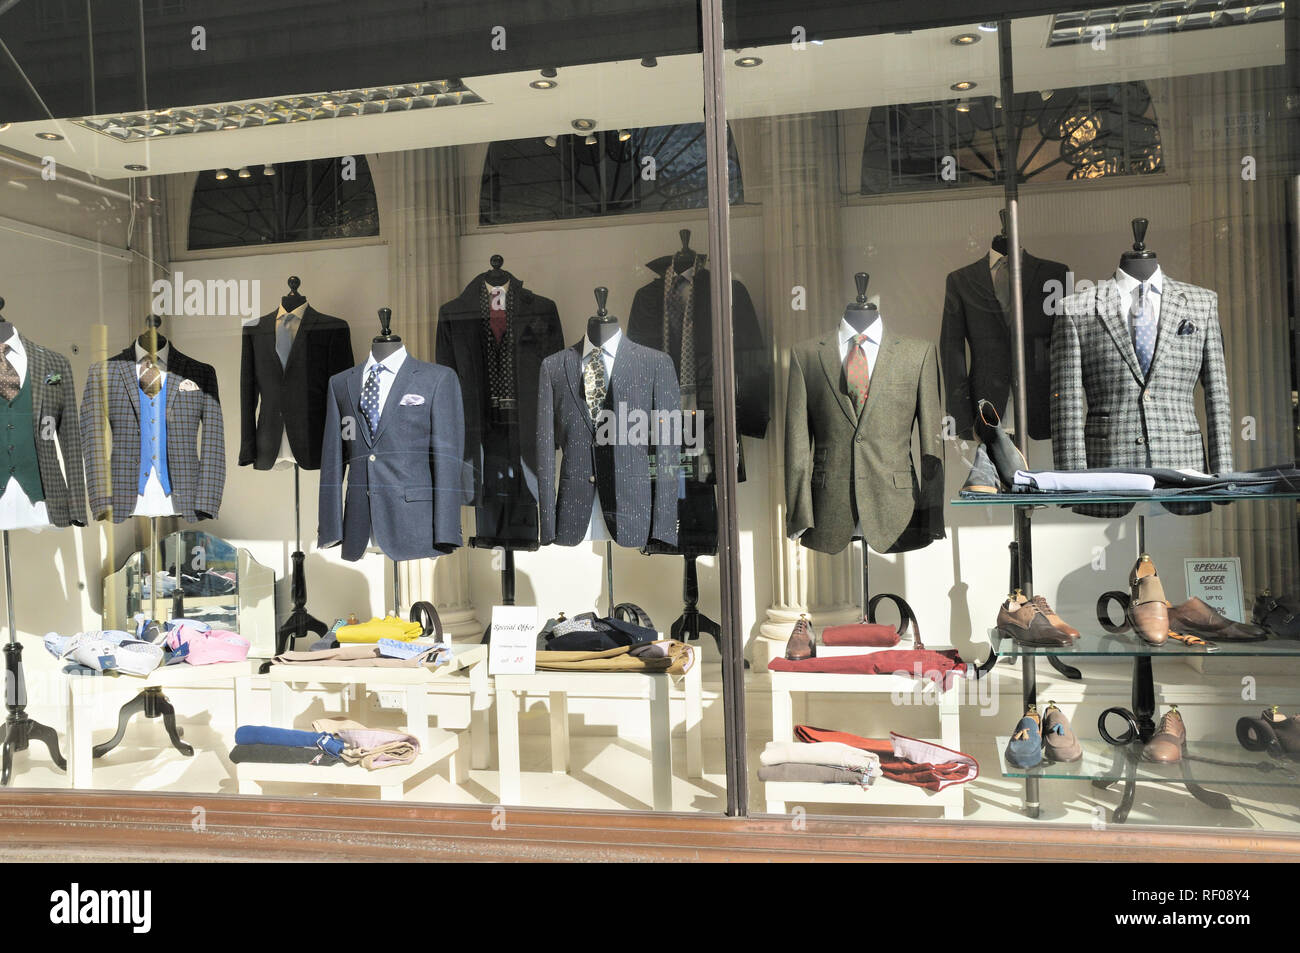 Vêtements pour homme Veste élégante convient et combinaisons en vitrine affichage, London, England, UK Banque D'Images